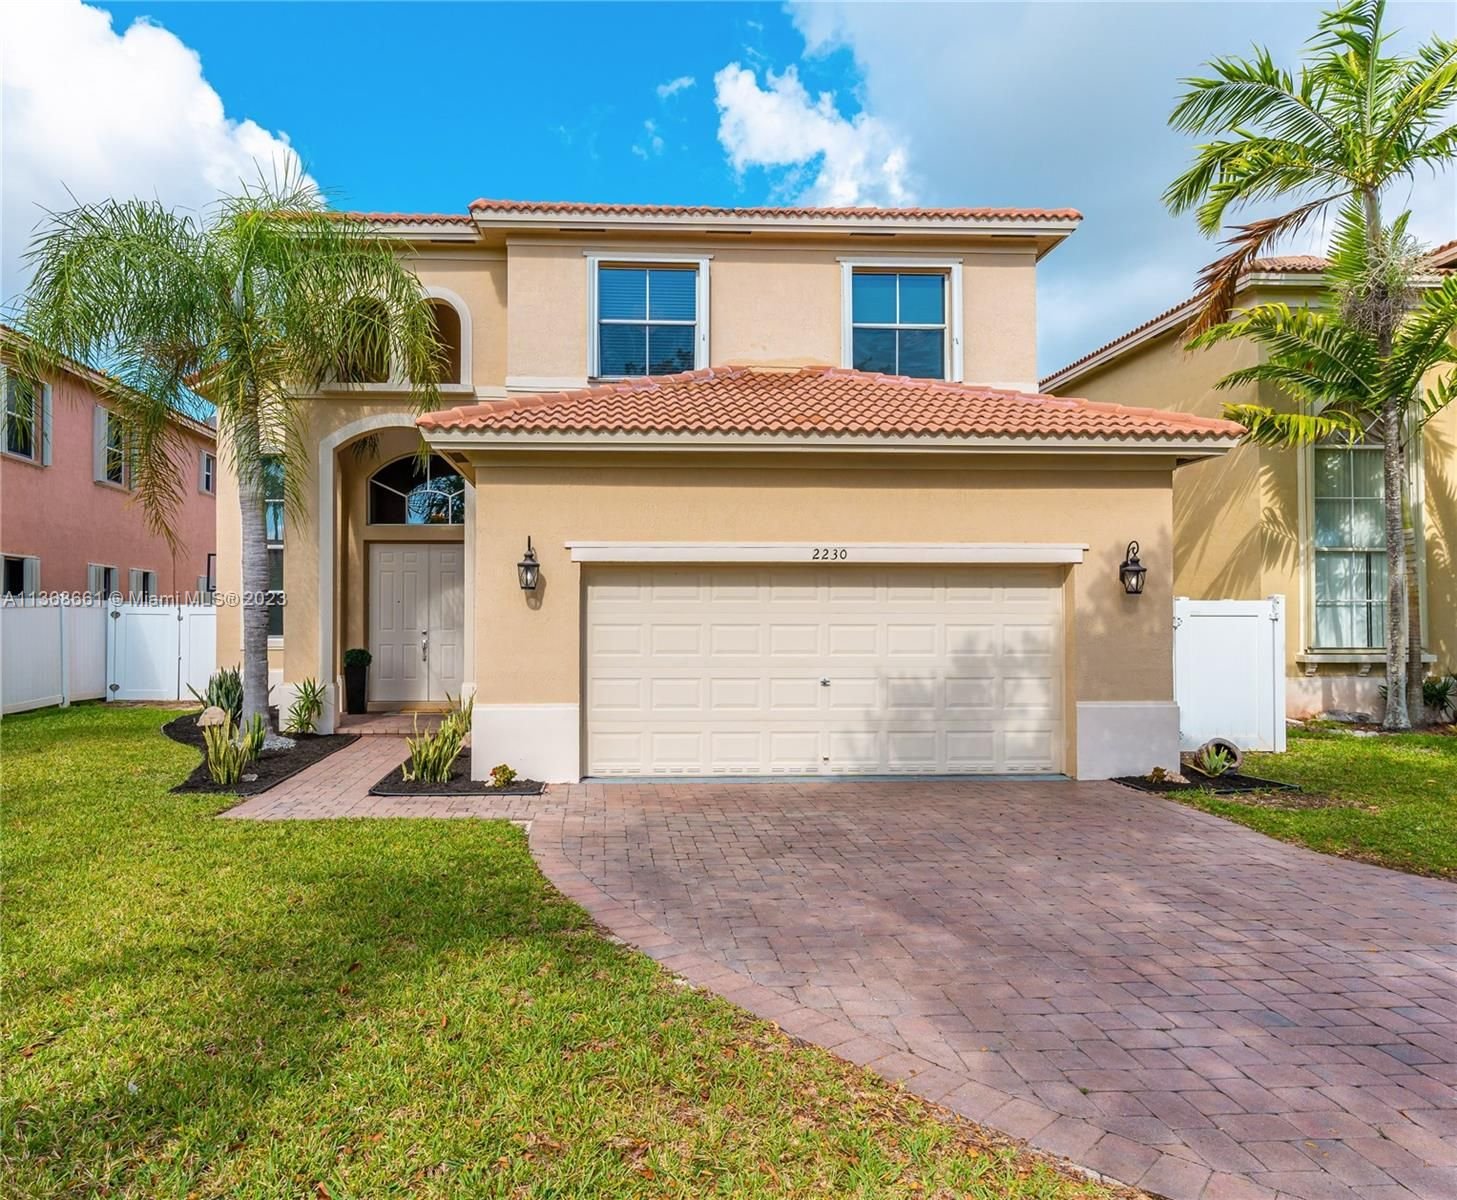 Real estate property located at 2230 Portofino Ave, Miami-Dade County, Homestead, FL